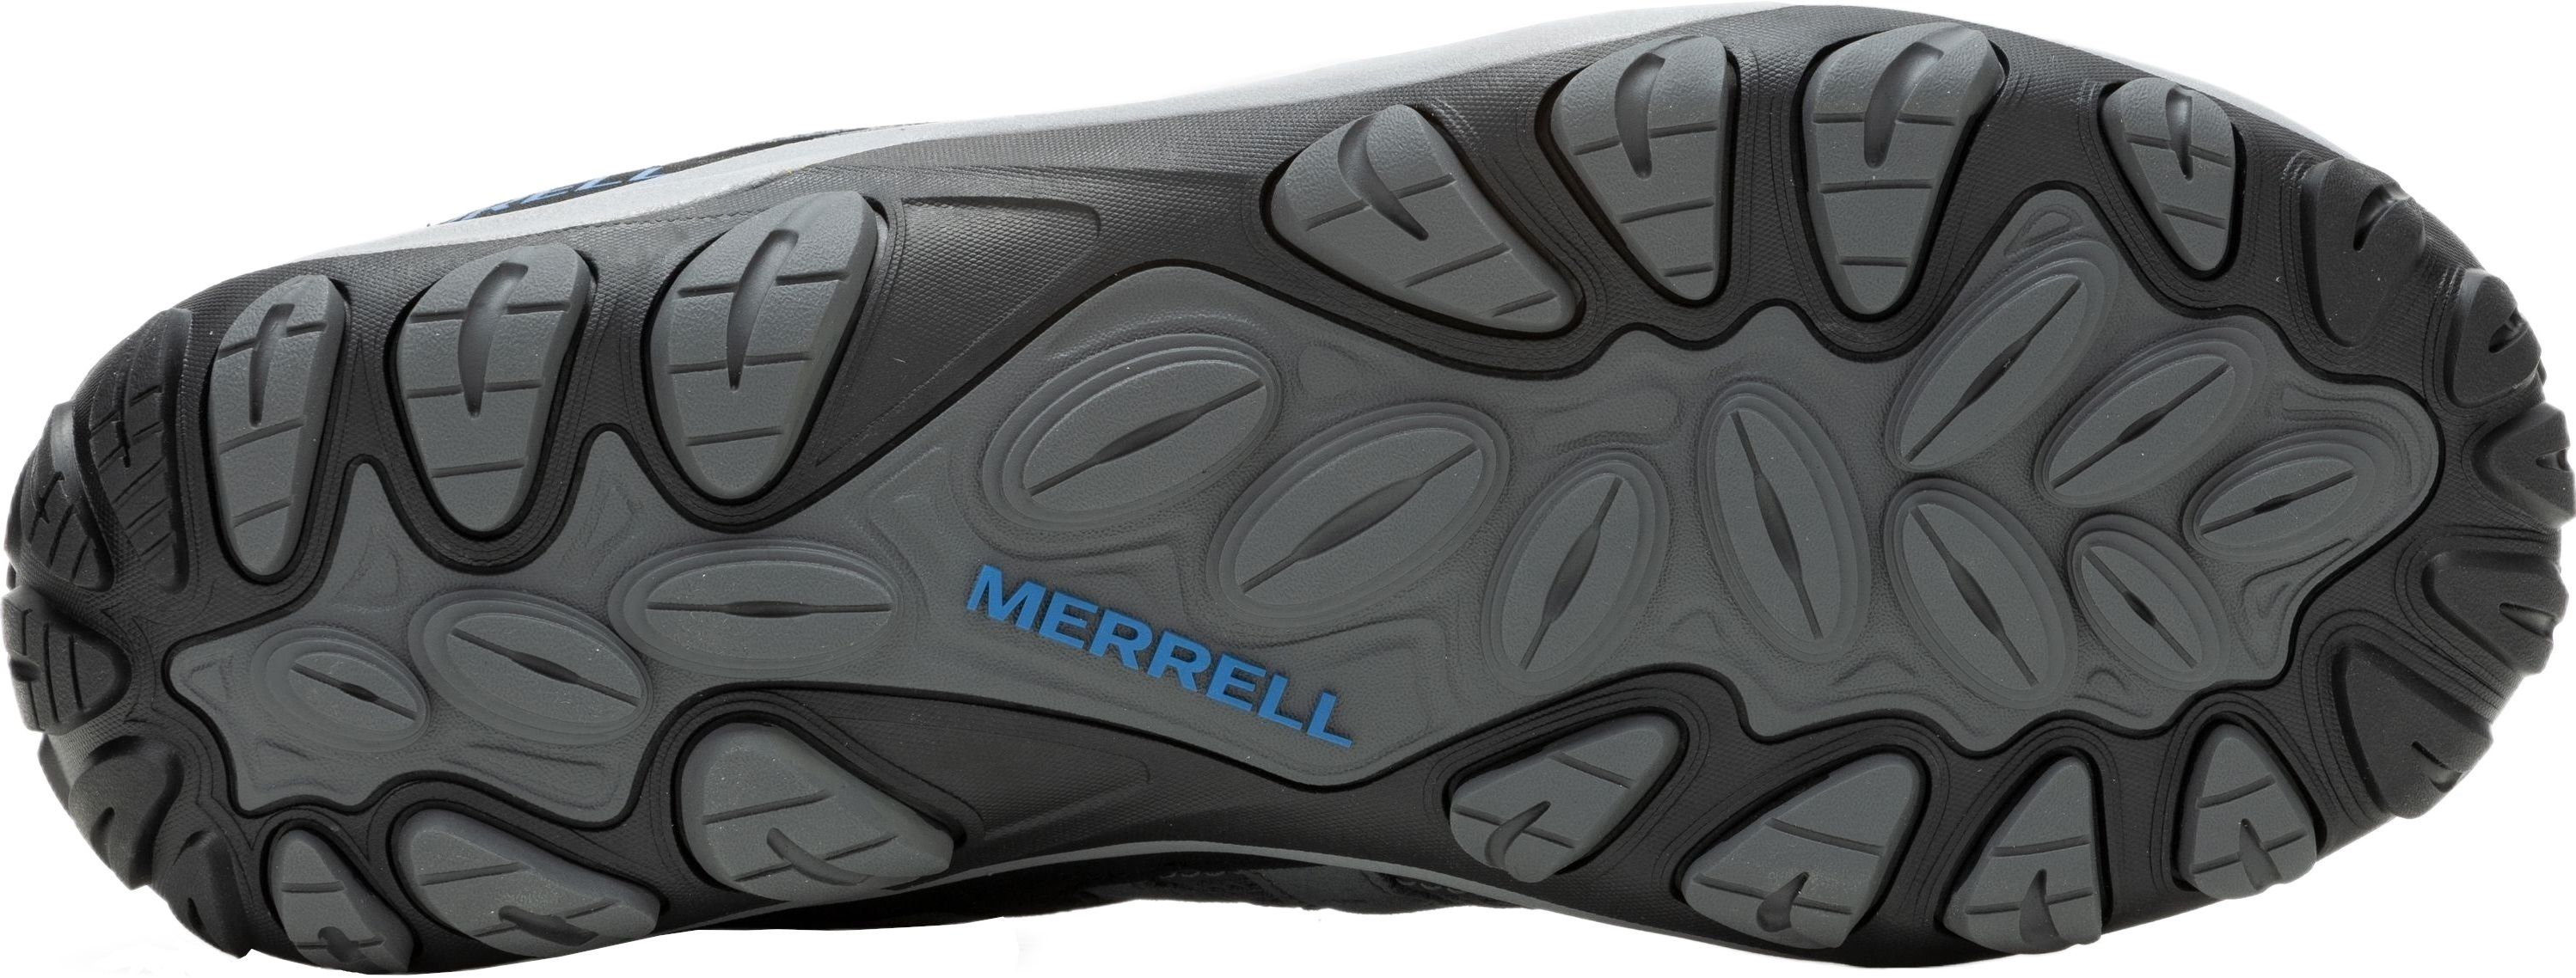 Кроссовки мужские Merrell Accentor 3 Rock/Blue 43.5 серый/синий фото 6